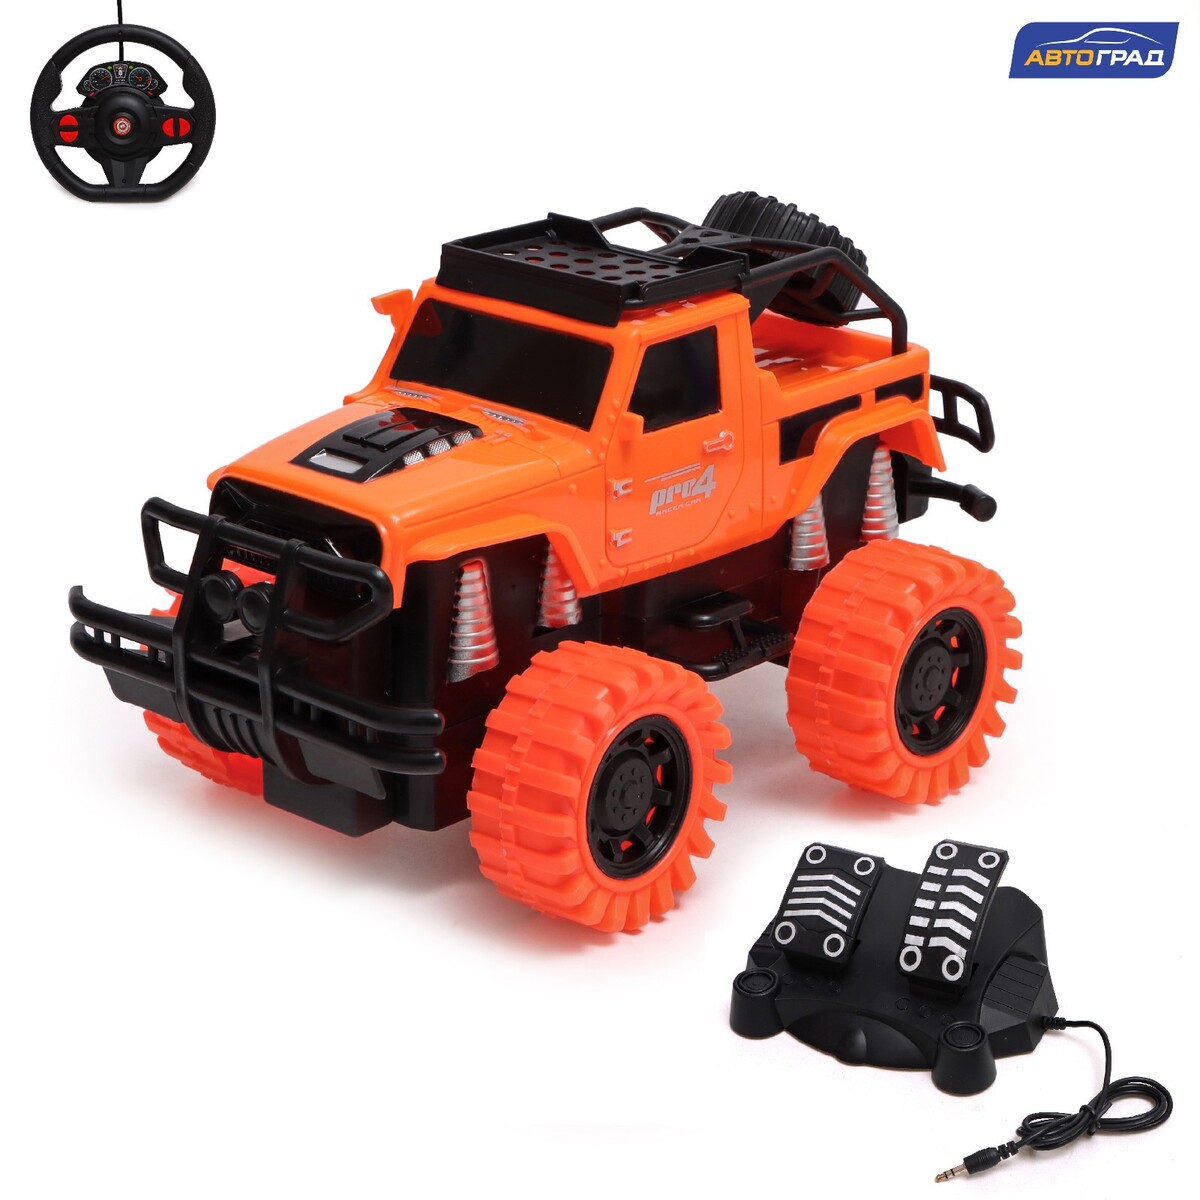 Джип радиоуправляемый truck, педали и руль, работает от аккумулятора, цвет оранжевый джип инерционный monster truck сиреневый